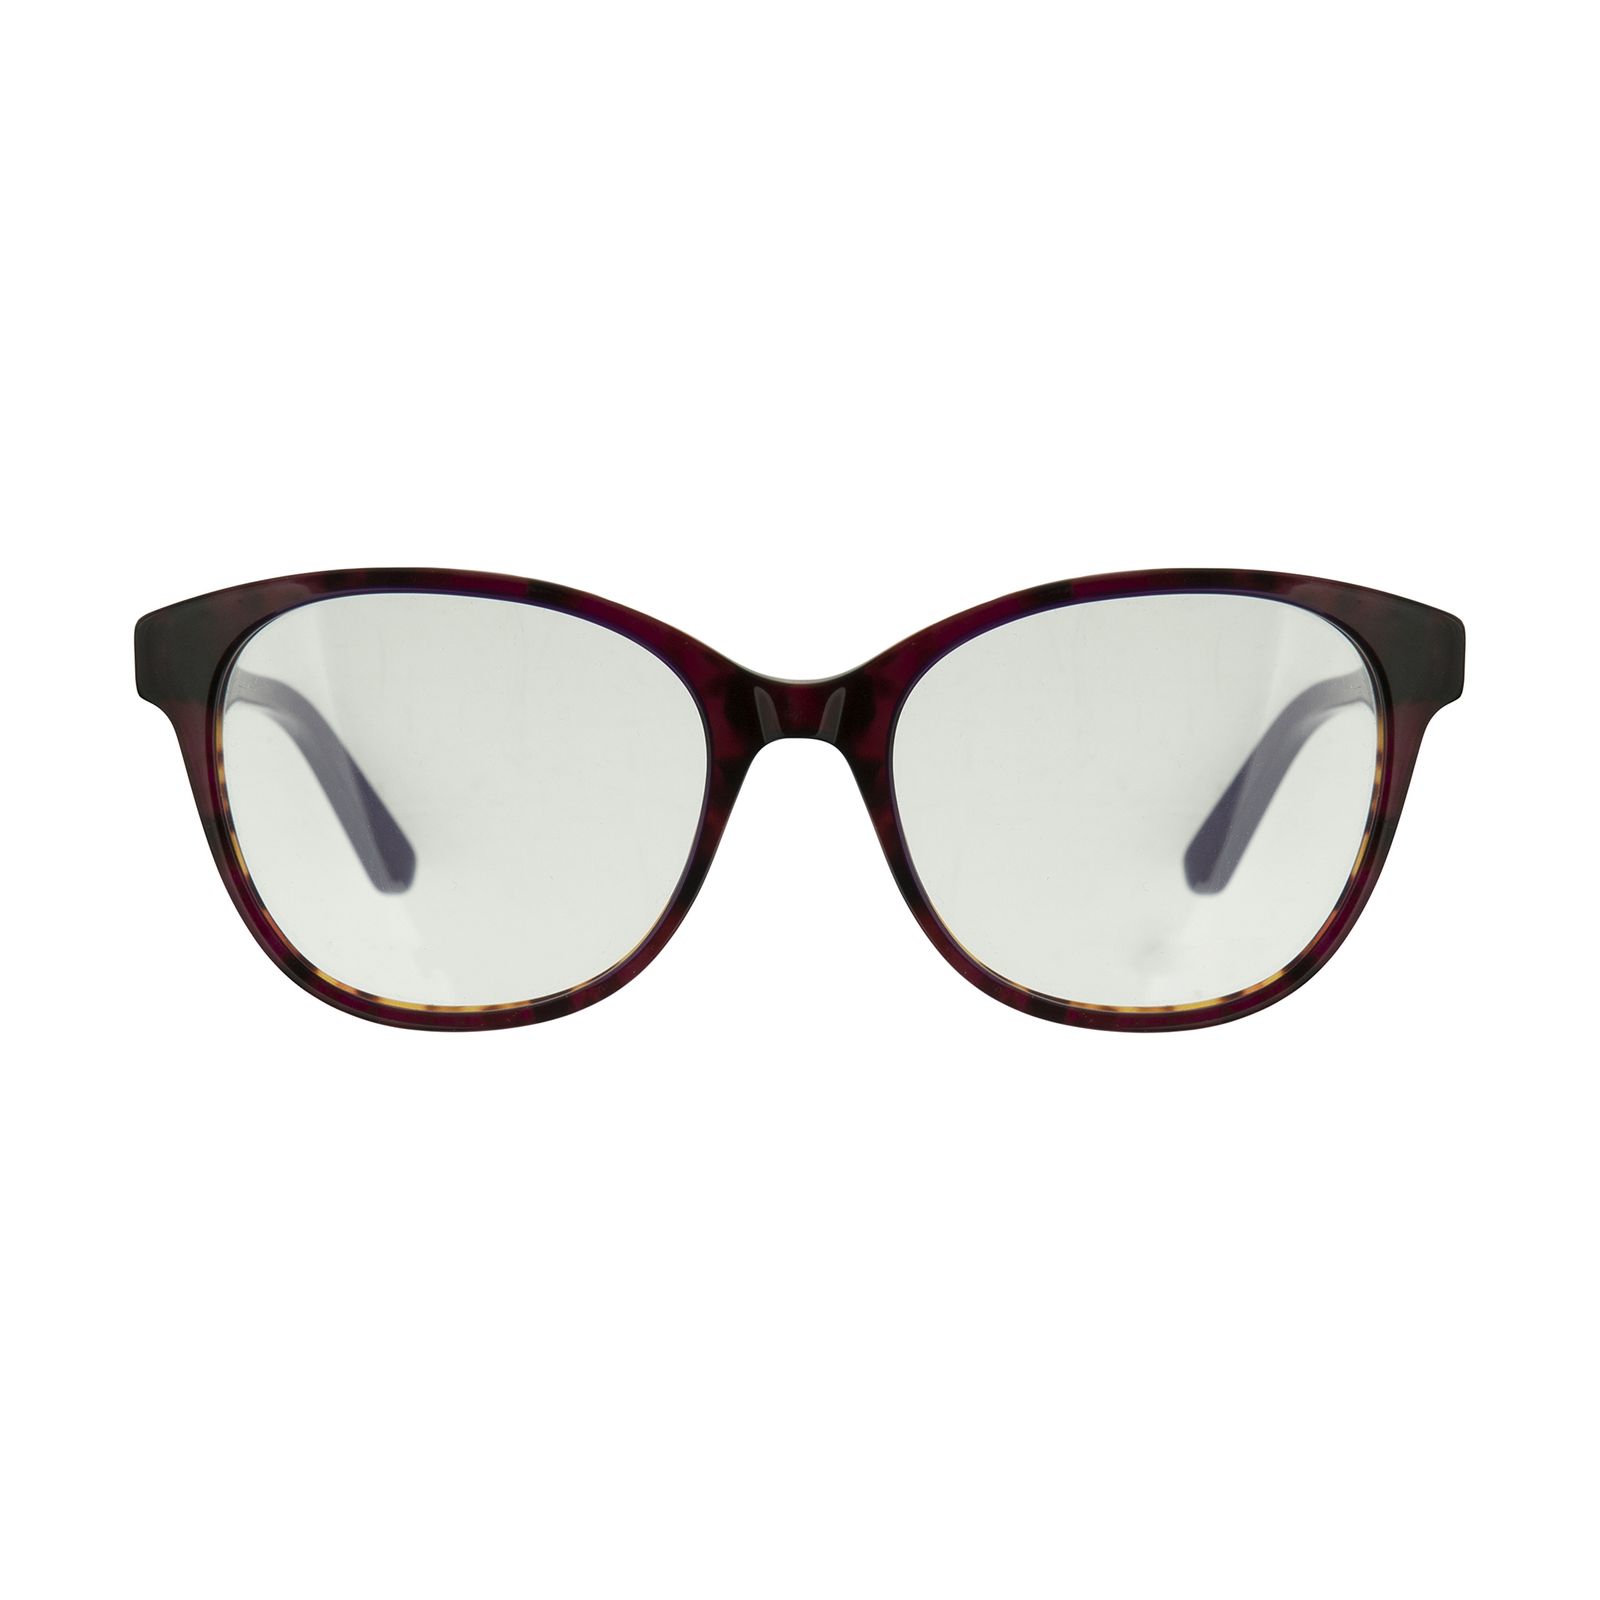 فریم عینک طبی زنانه کارل لاگرفلد مدل KL970V150 -  - 1